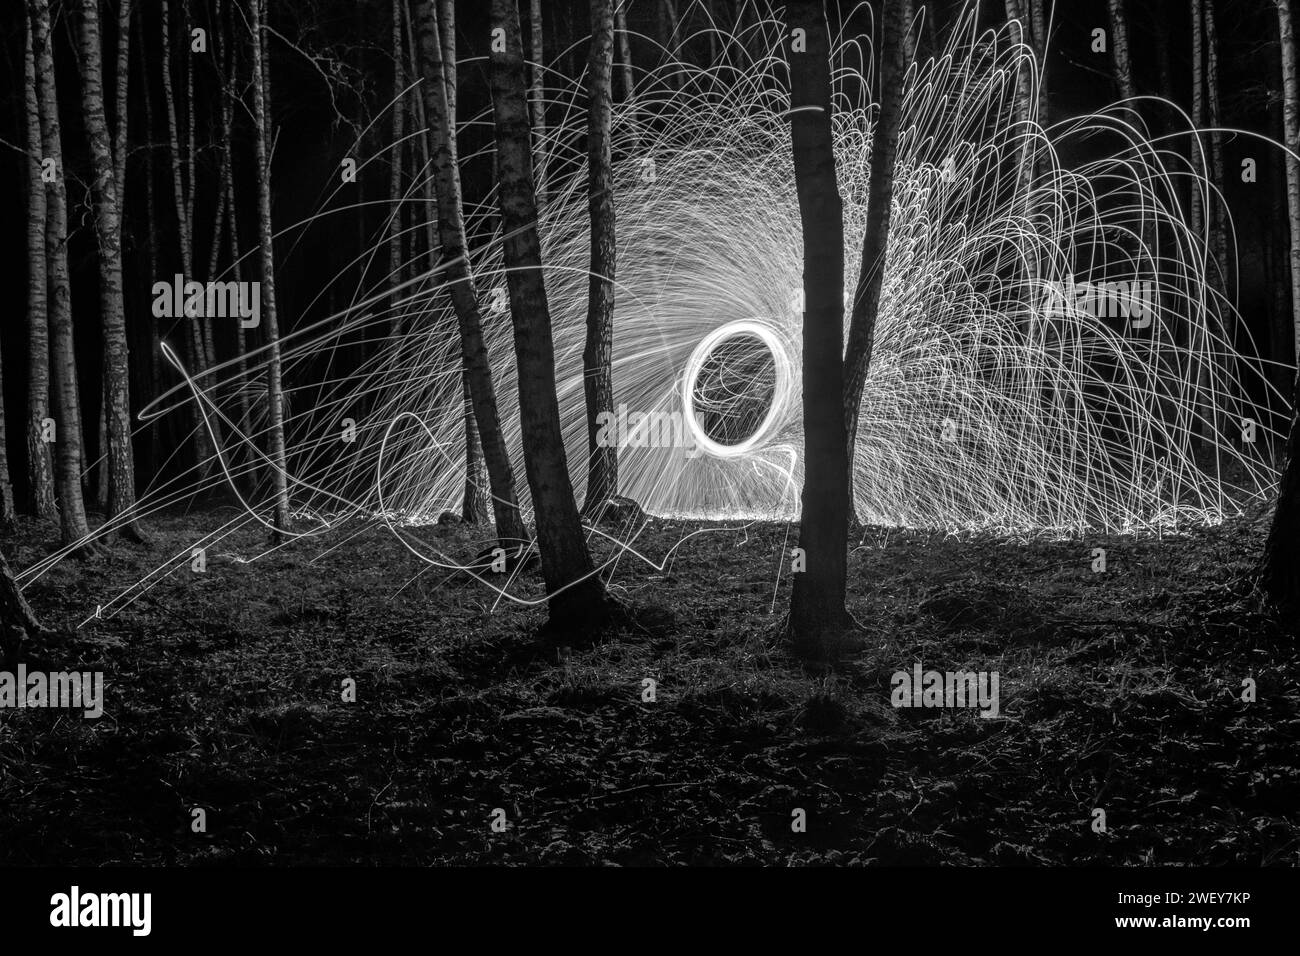 photo monochrome avec des silhouettes d'arbres contre des lumières illuminées, peintures lumineuses, photographie en noir et blanc Banque D'Images